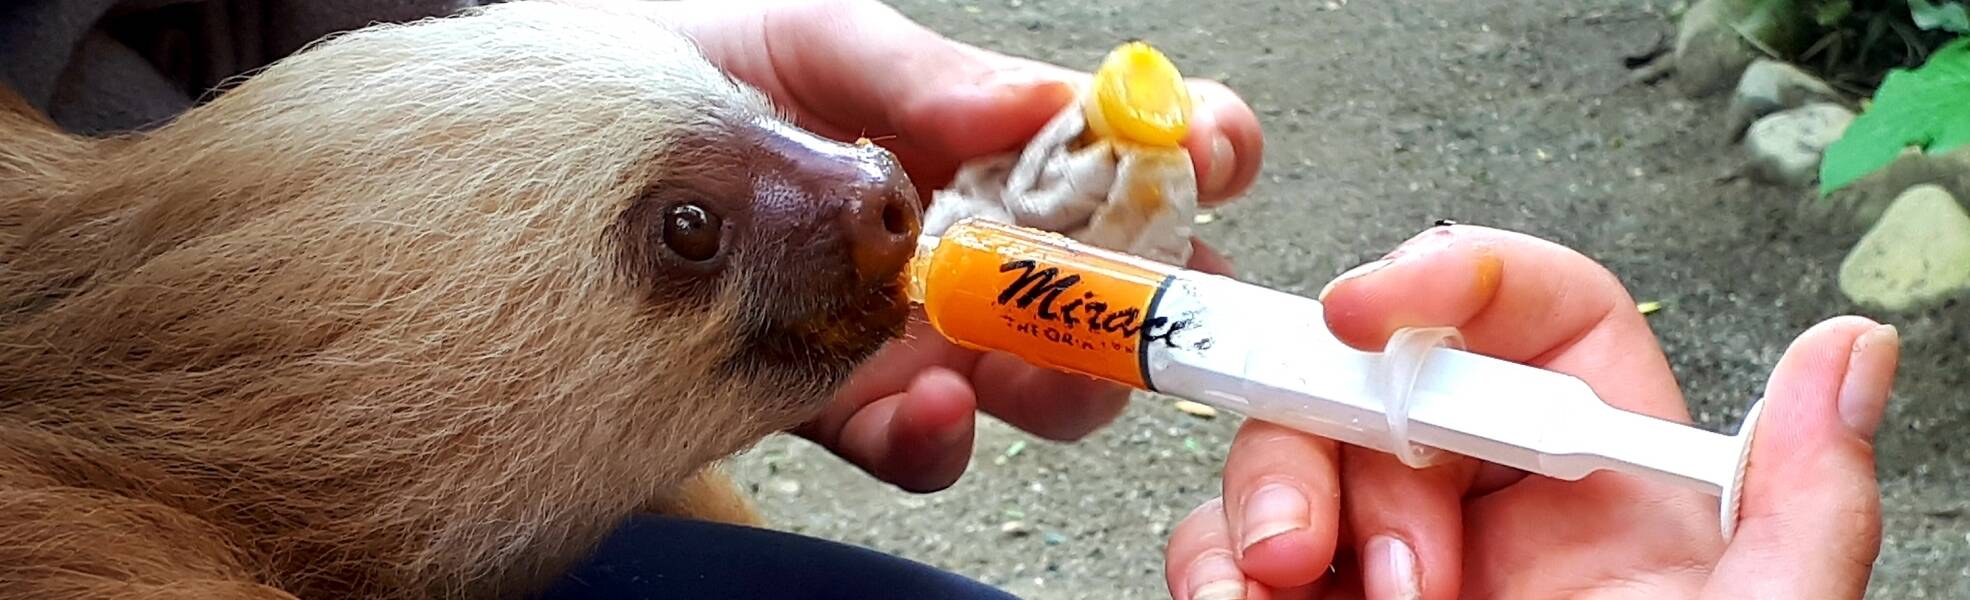 Veterinary Medicine: Feeding a Sloth in Costa Rica